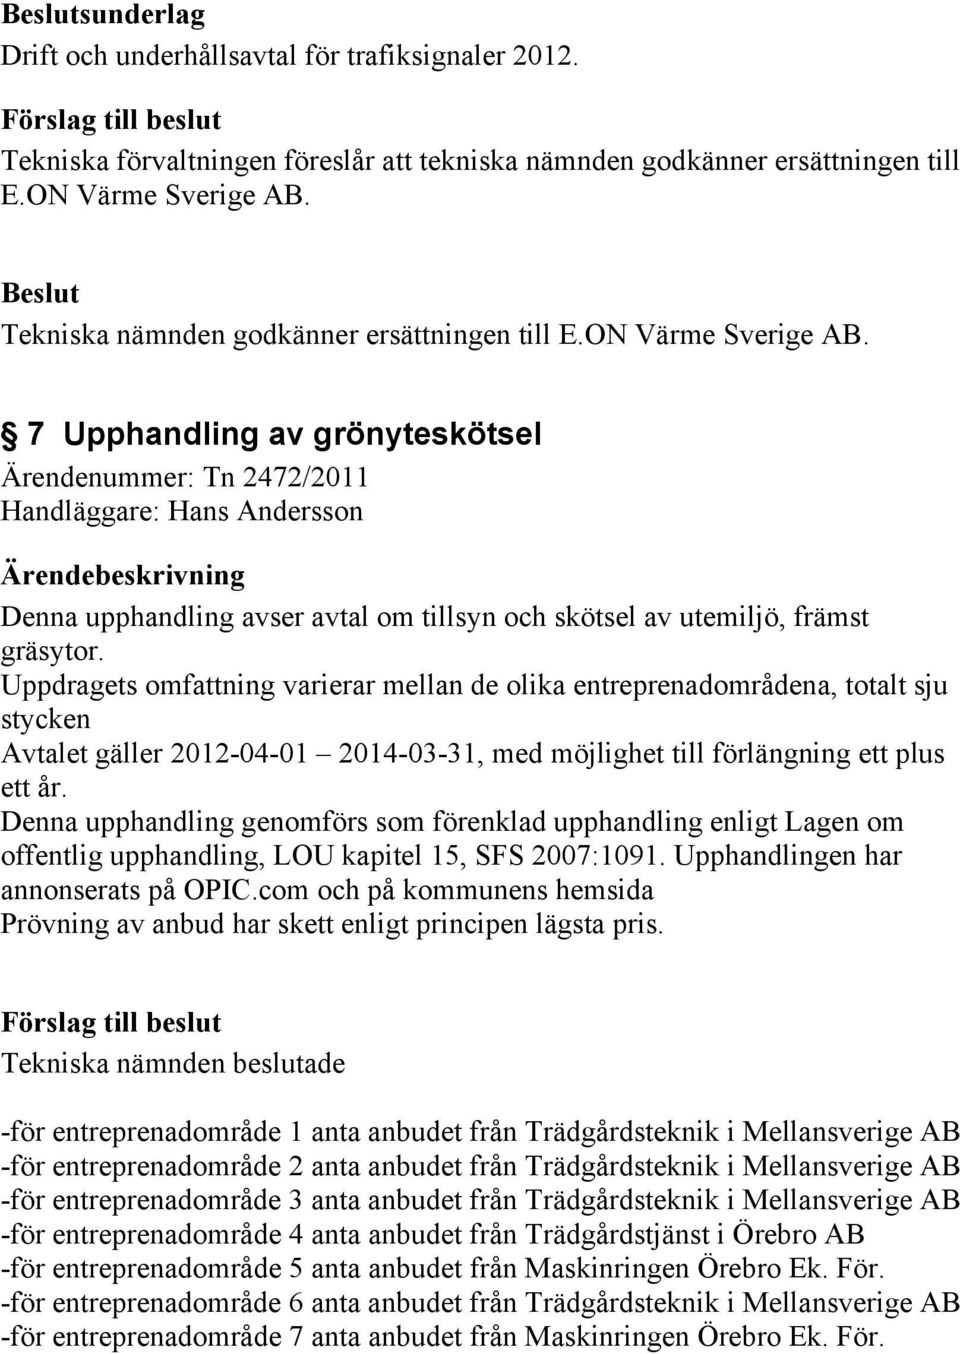 7 Upphandling av grönyteskötsel Ärendenummer: Tn 2472/2011 Handläggare: Hans Andersson Denna upphandling avser avtal om tillsyn och skötsel av utemiljö, främst gräsytor.